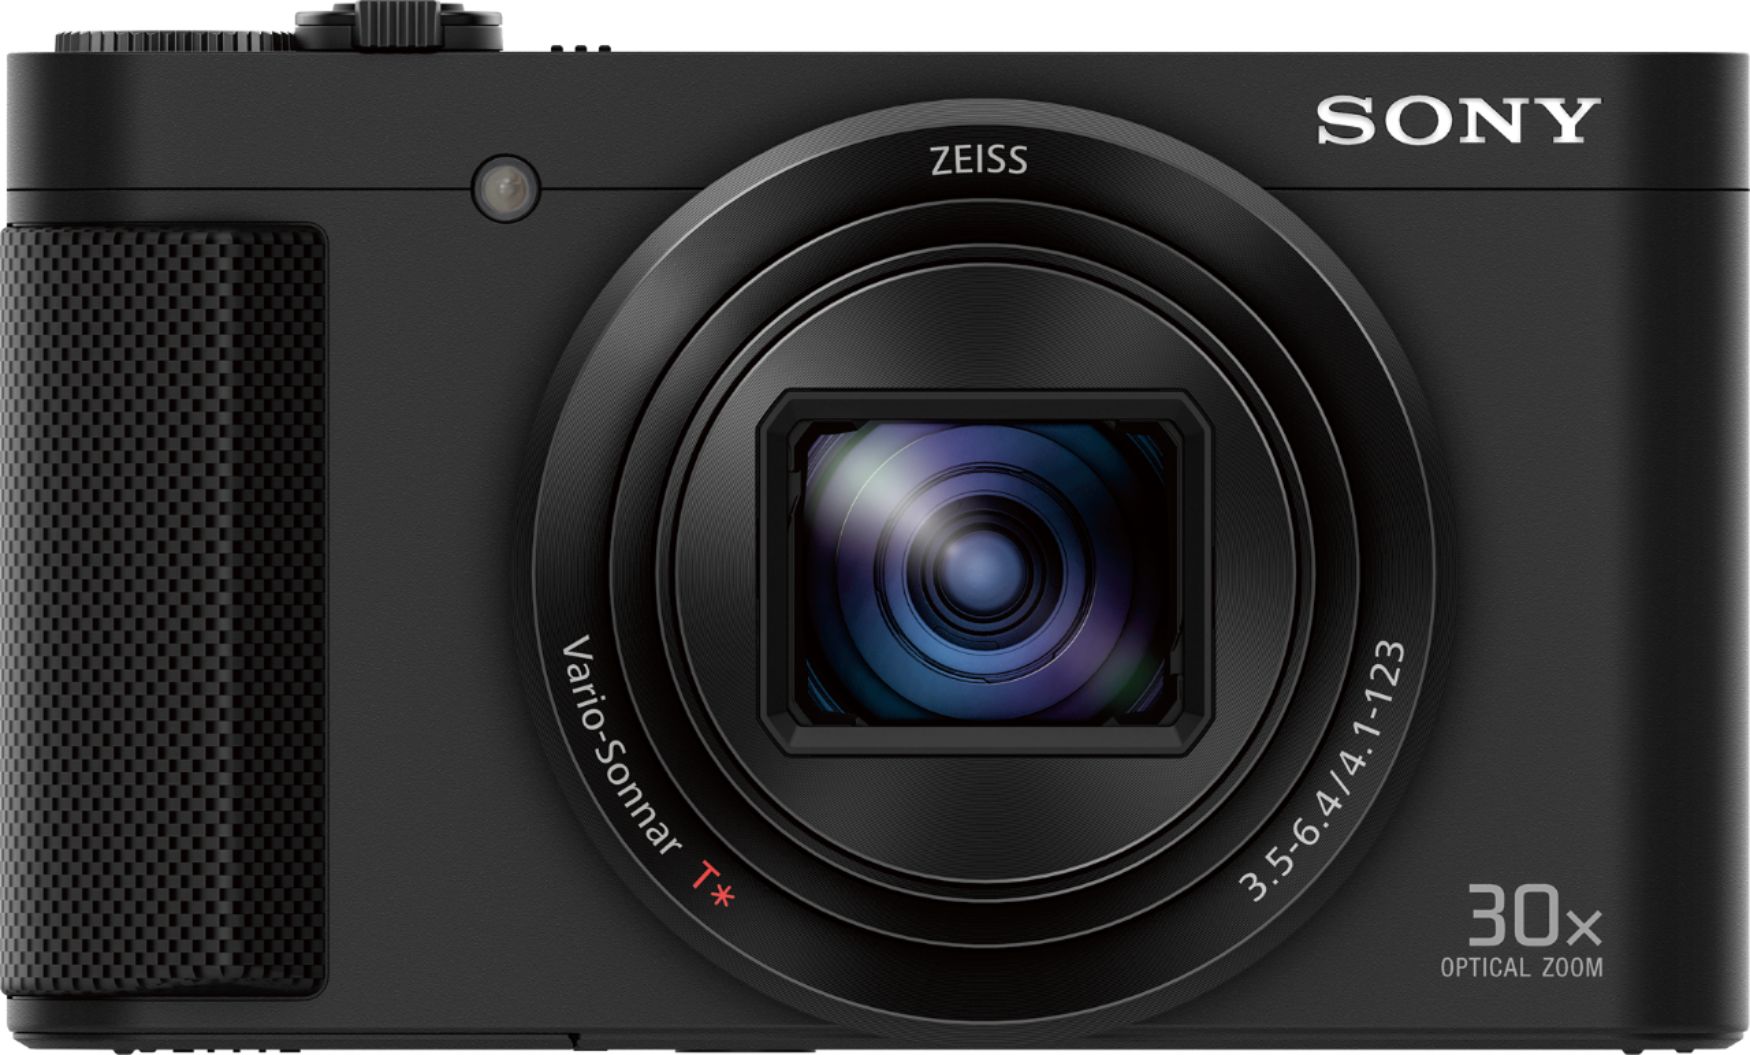 Best Buy: Sony Cyber-shot DSC-HX80 18.2-Megapixel Digital Camera